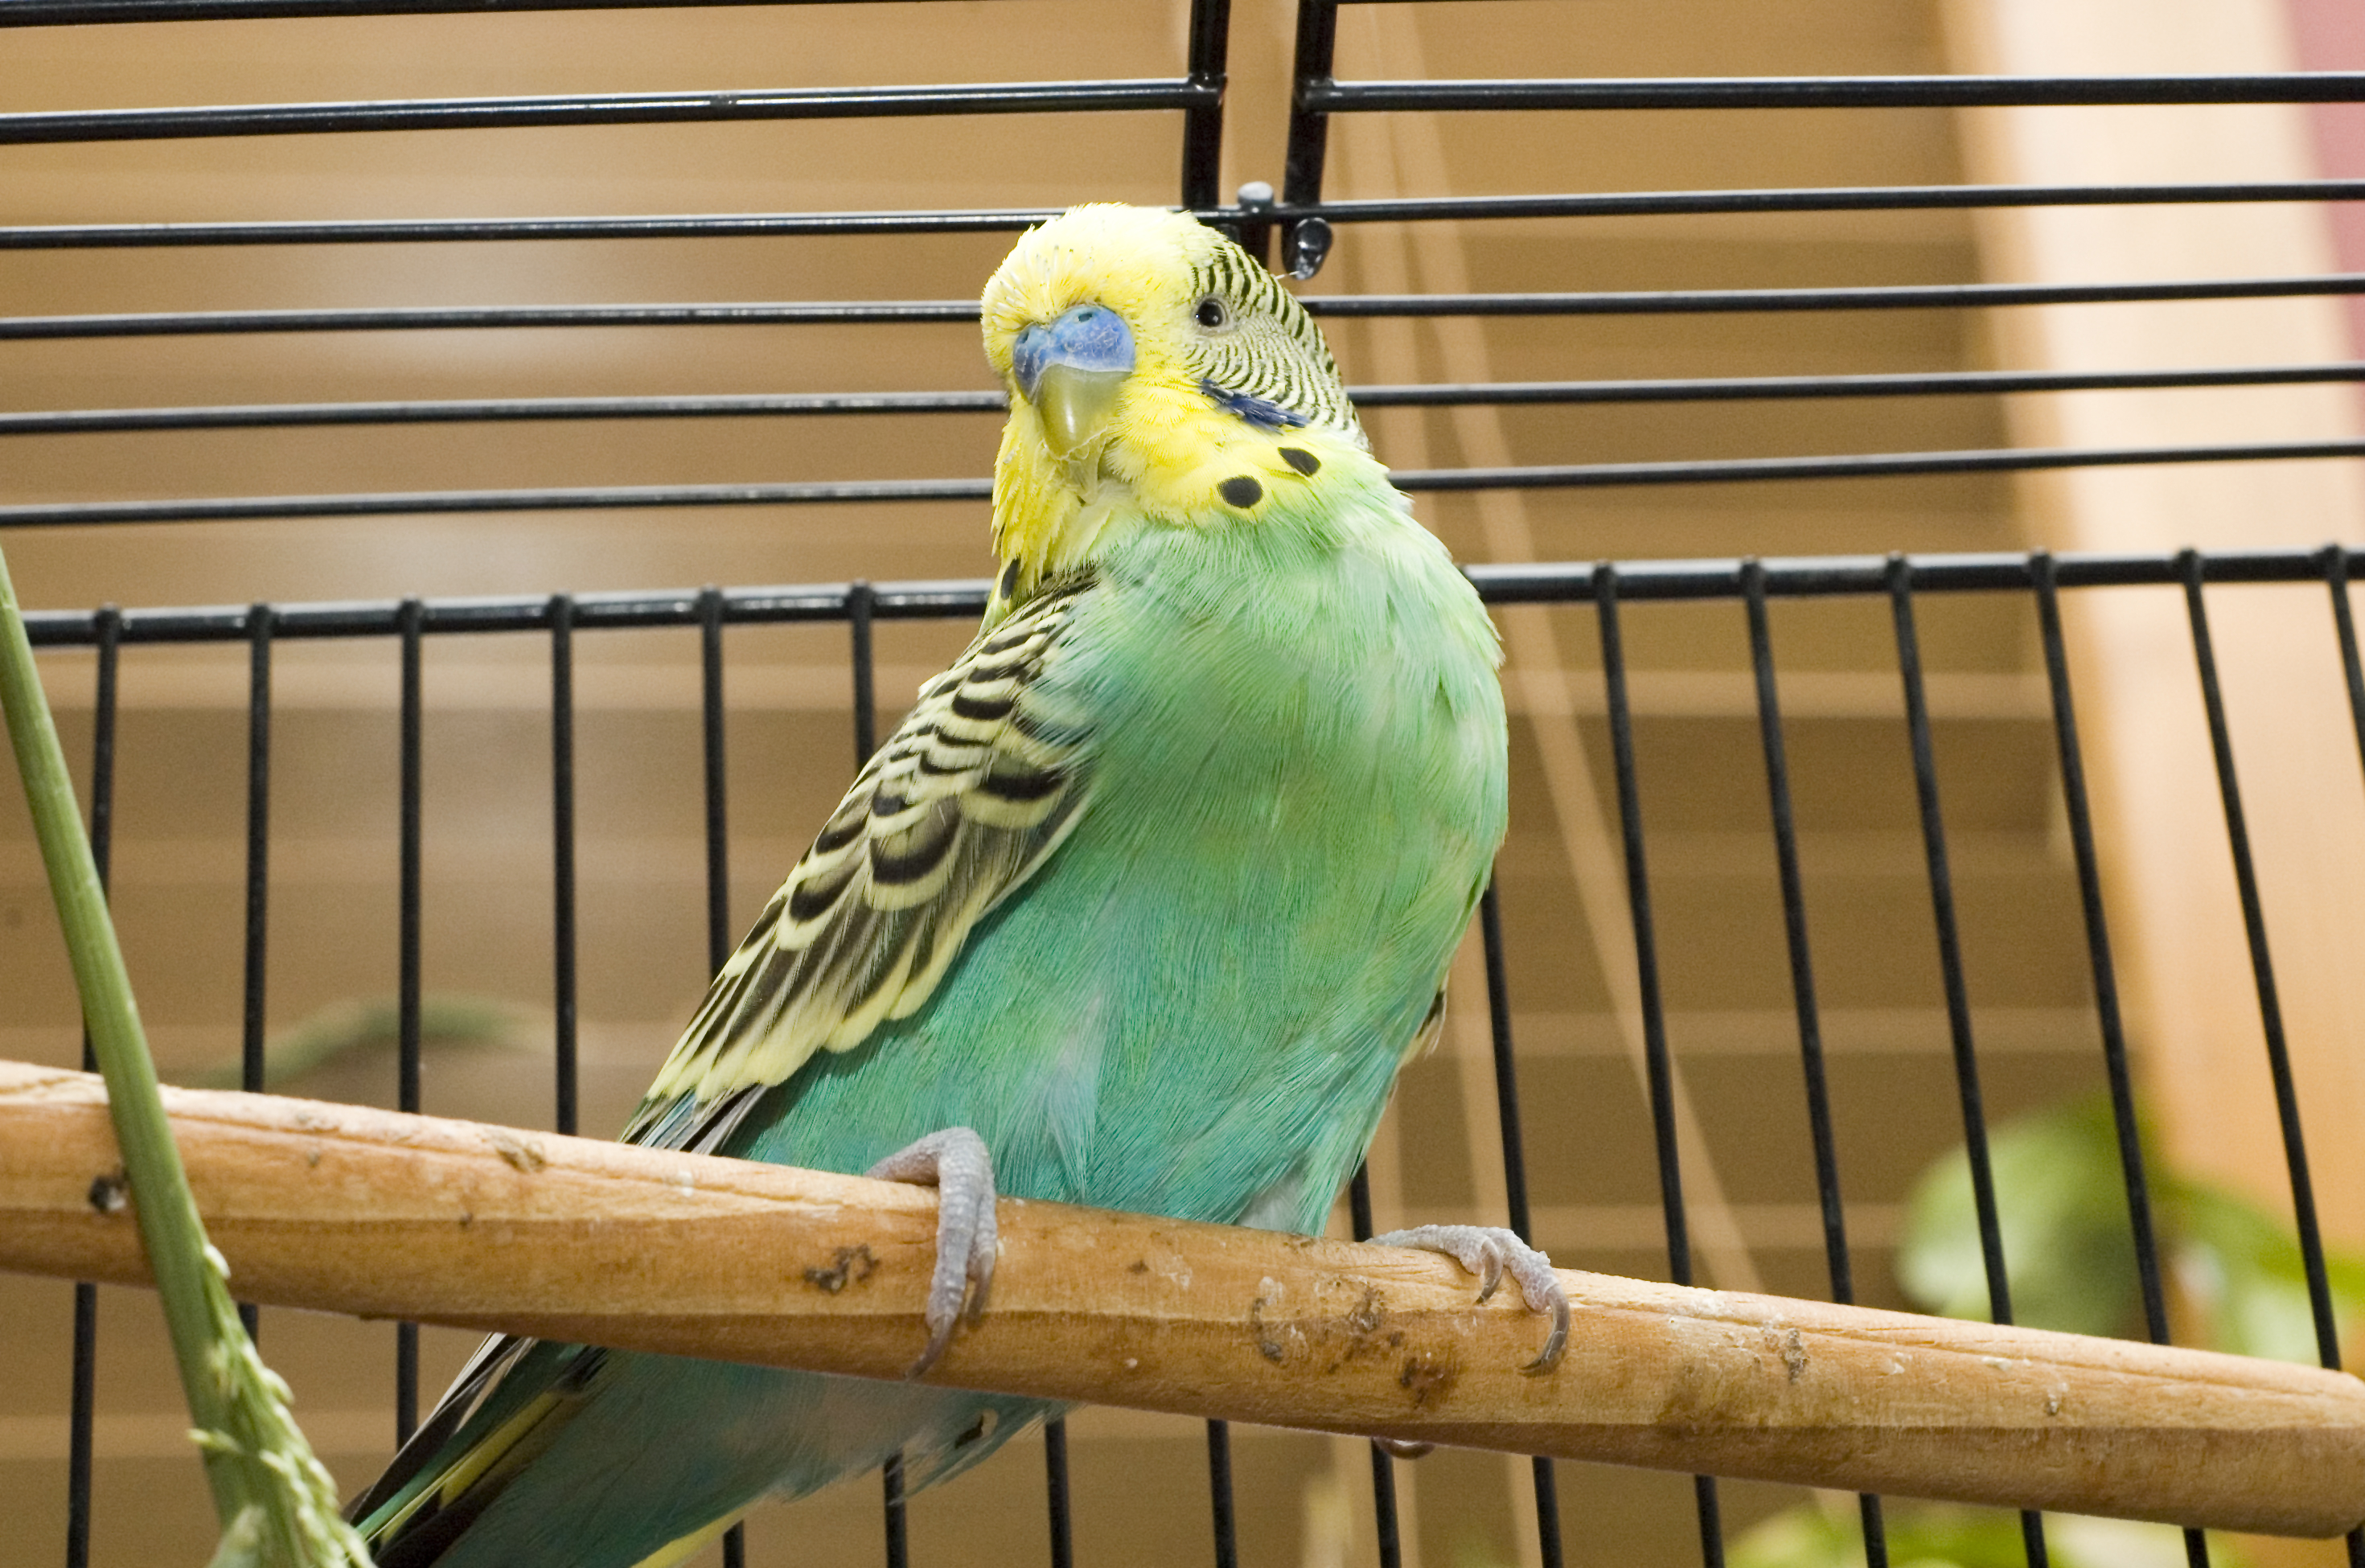 Anti oiseau : solution, traitement et conseil contre les oiseaux